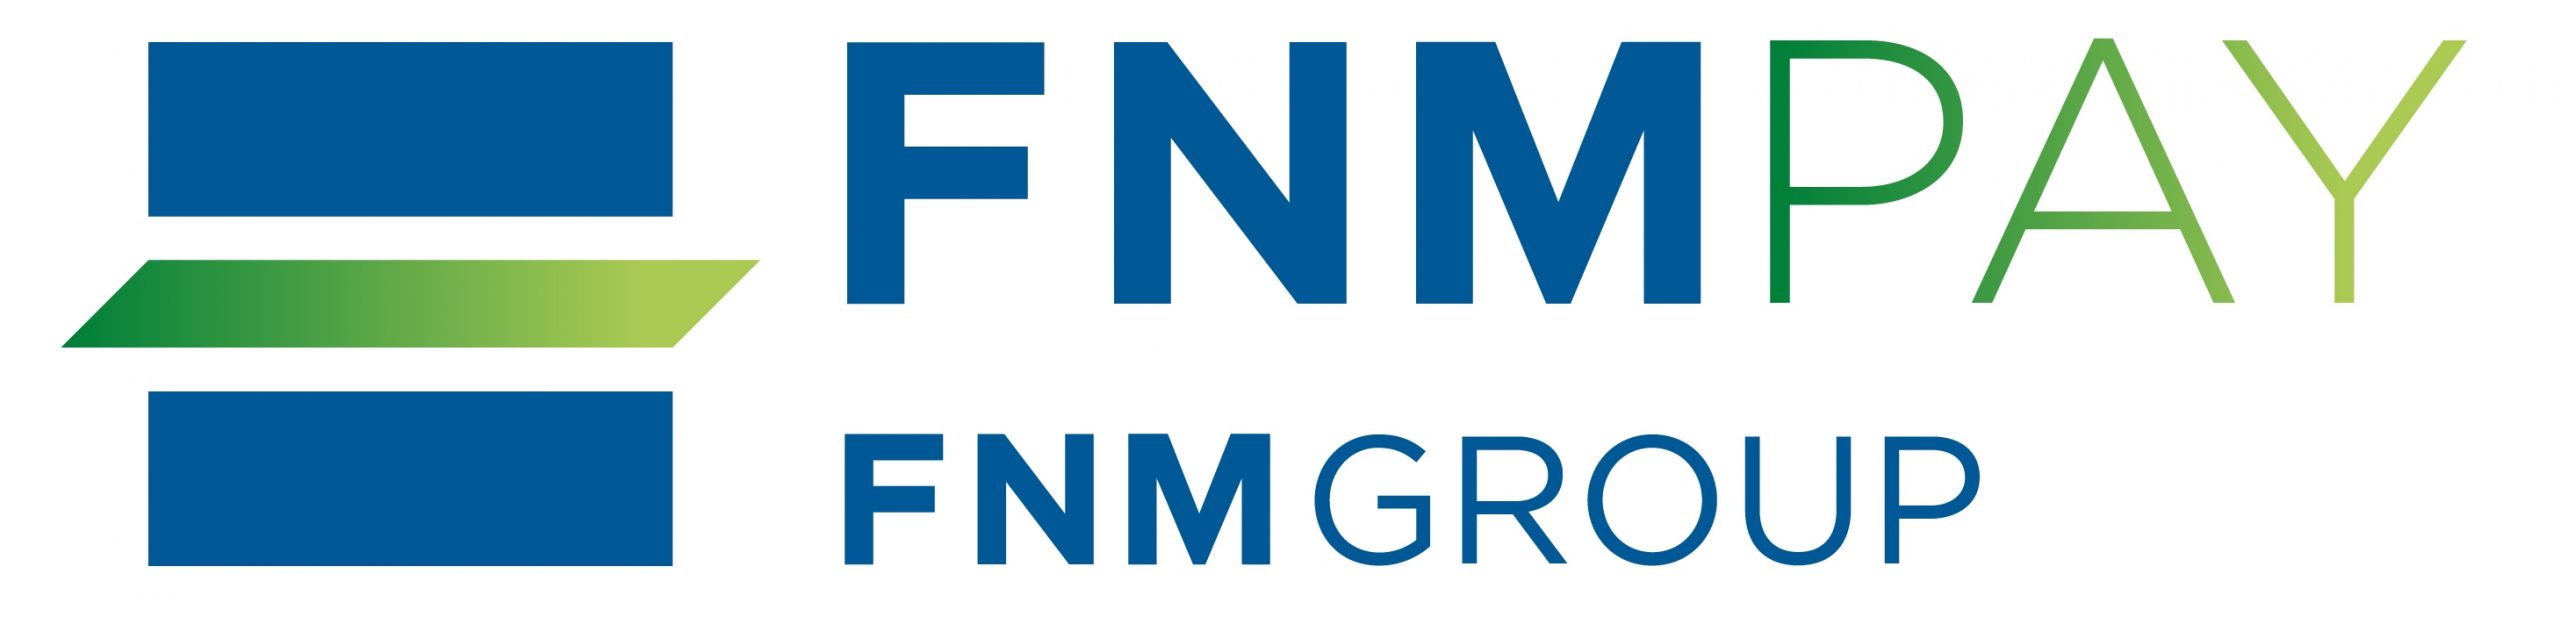 Logo FNMPAY_06.11